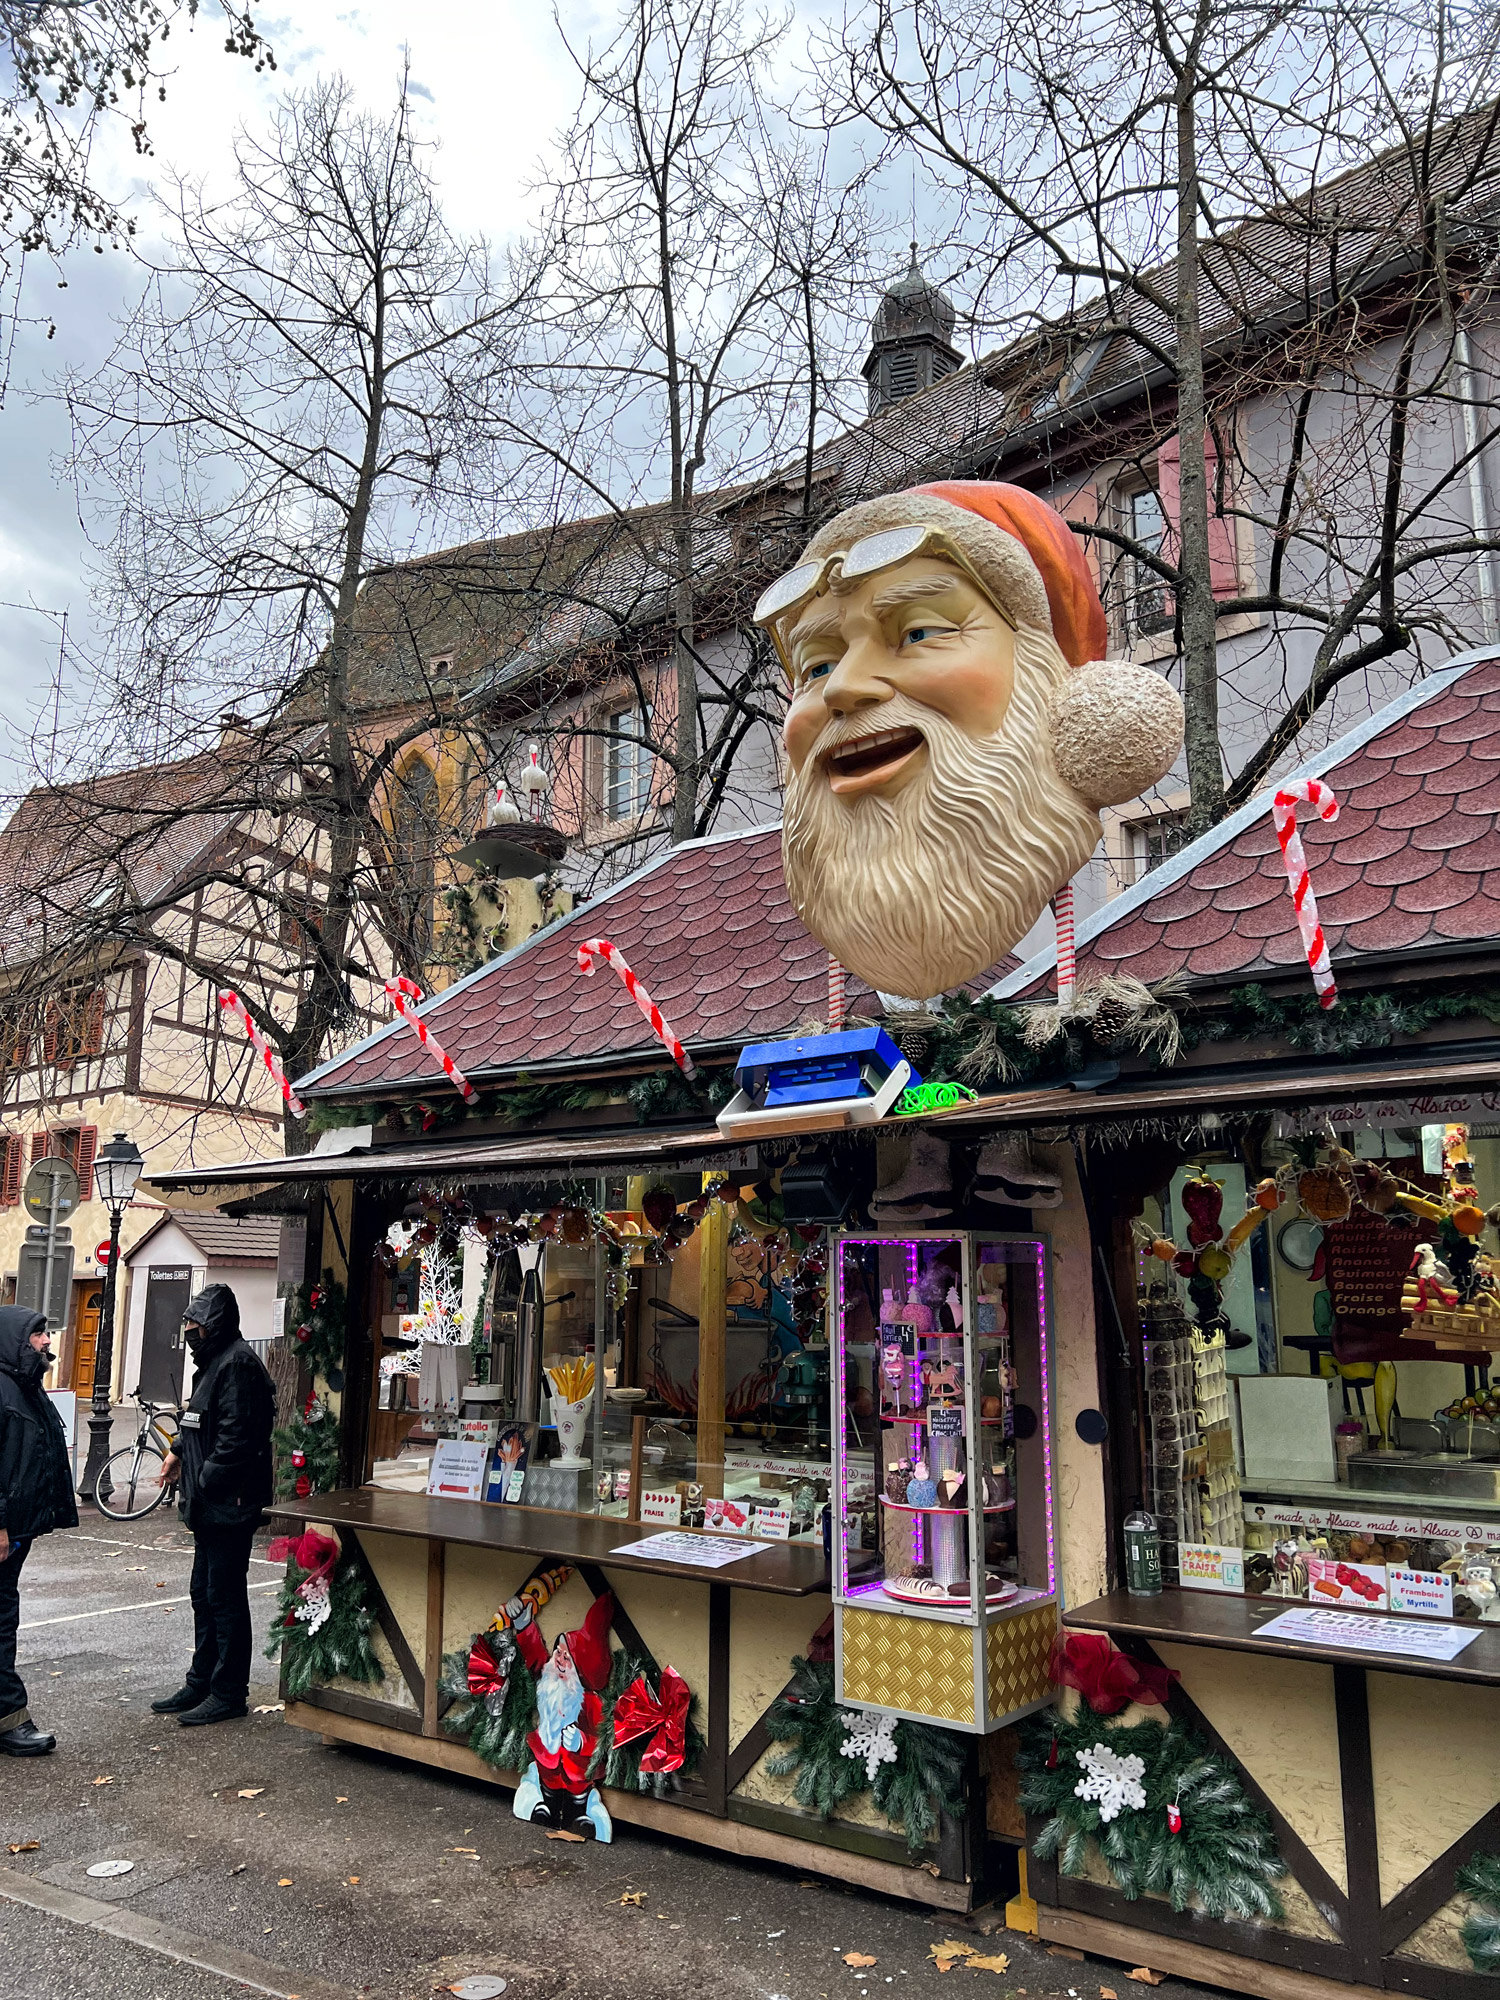 Kerstmarkt van Colmar